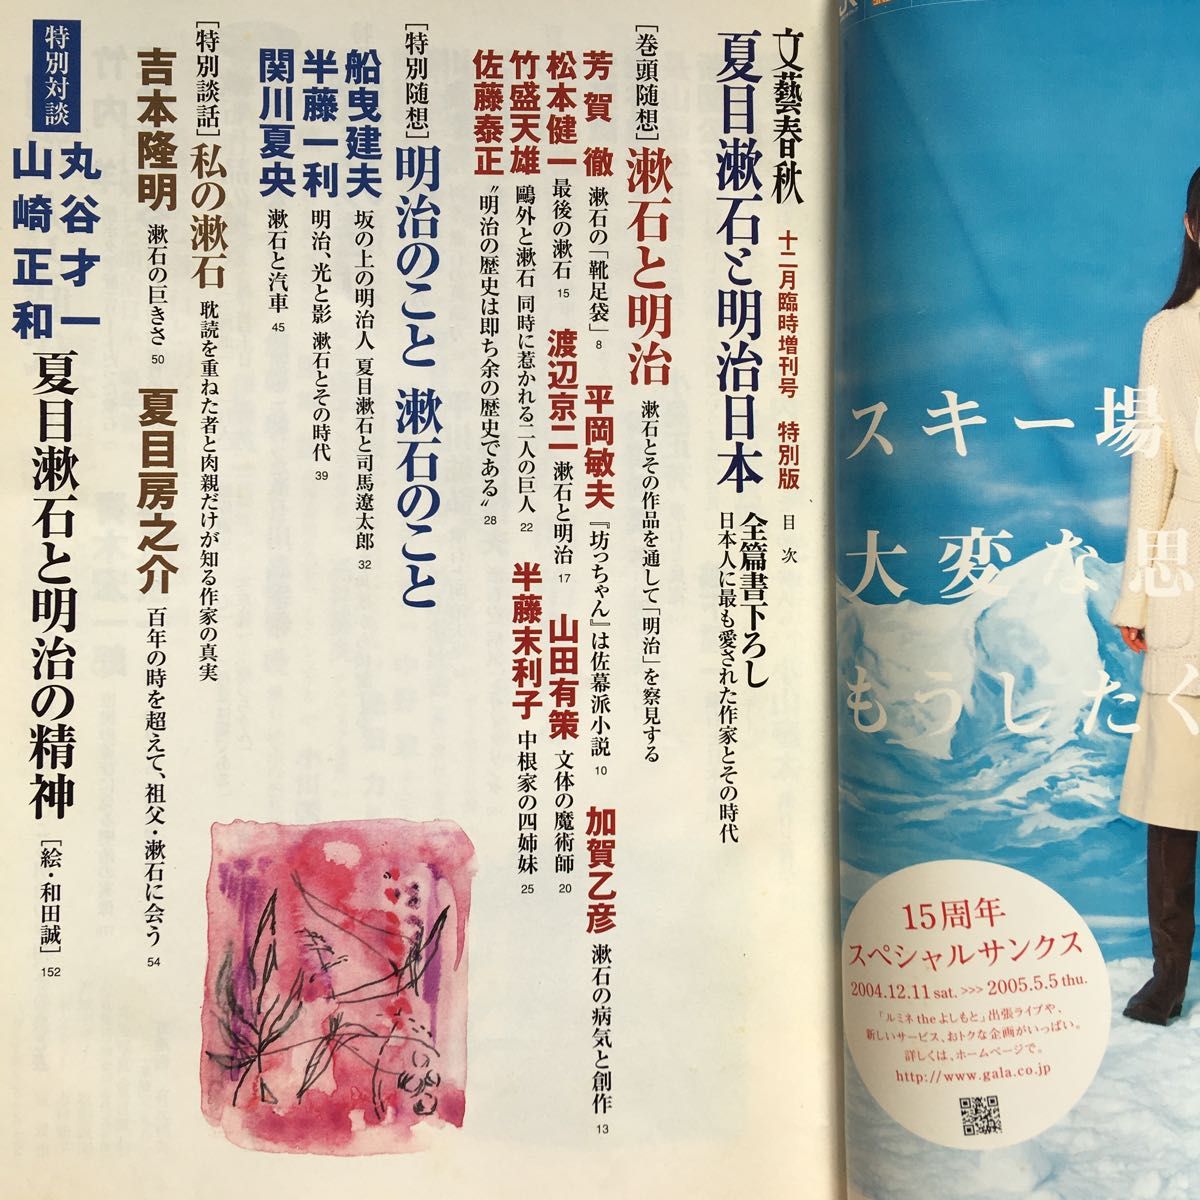 文藝春秋 夏目漱石と明治日本 特別版 2004年12月臨時増刊号